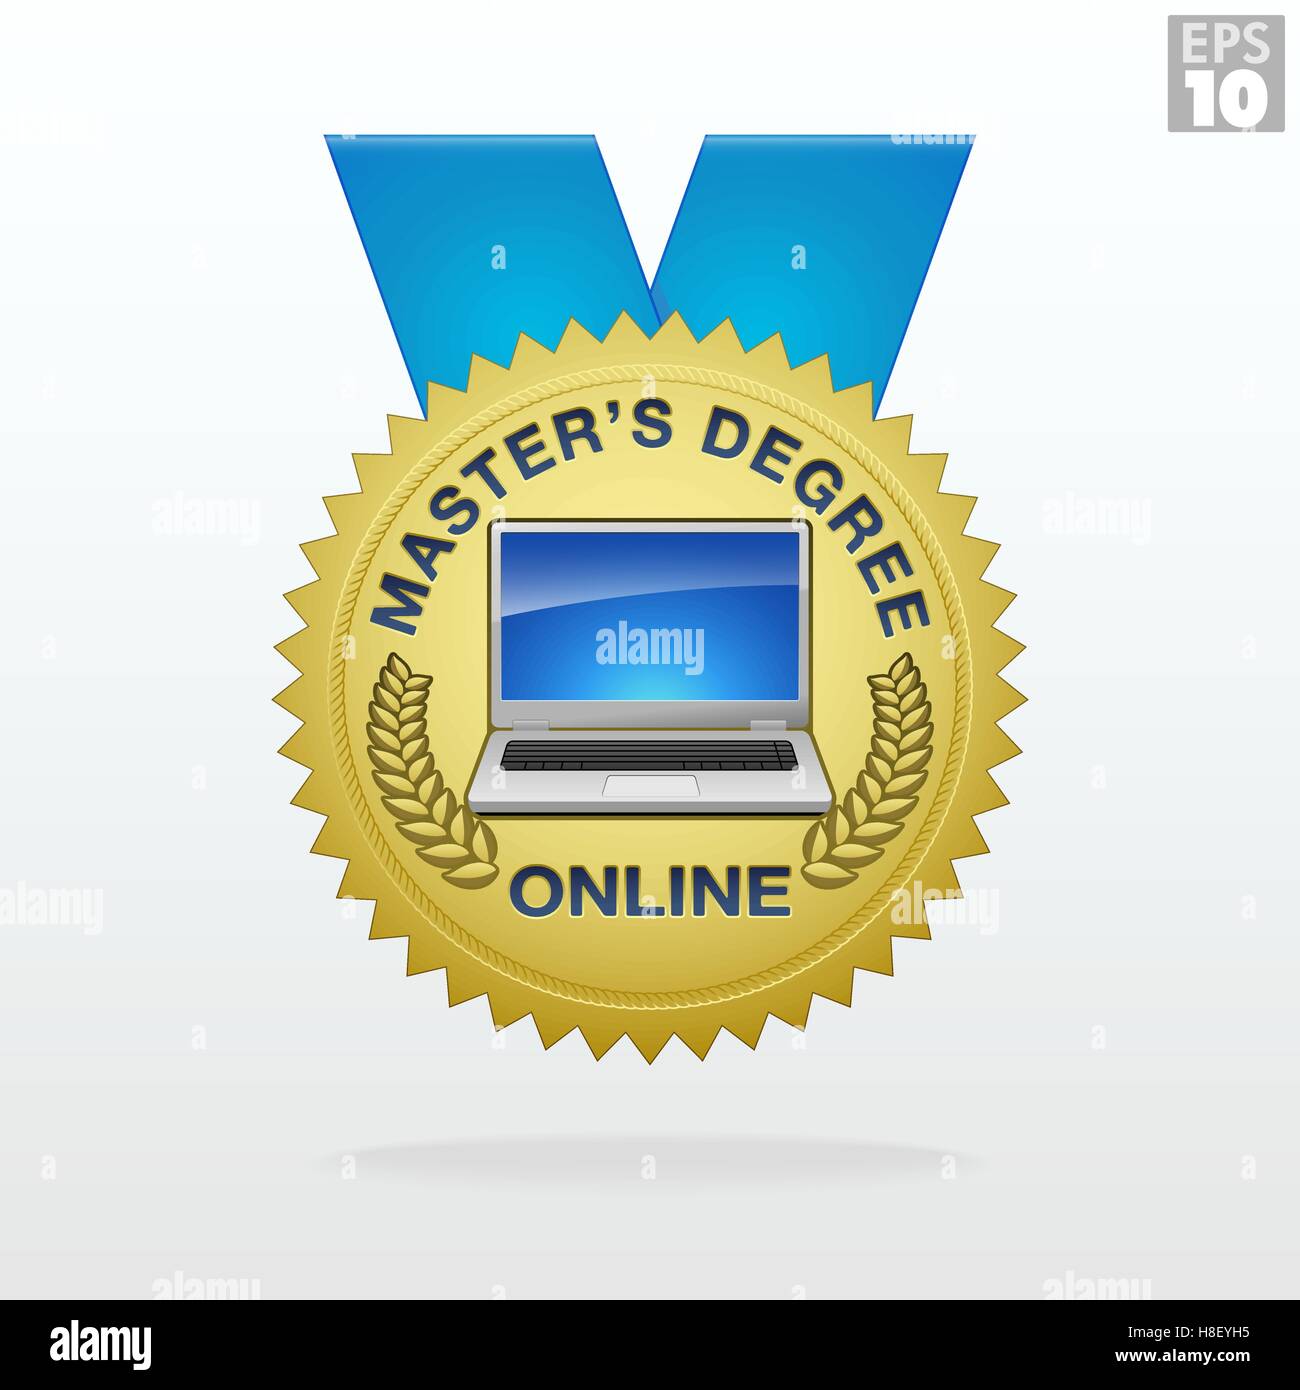 Master degree gold medal ribbon for online classes Stock Vector